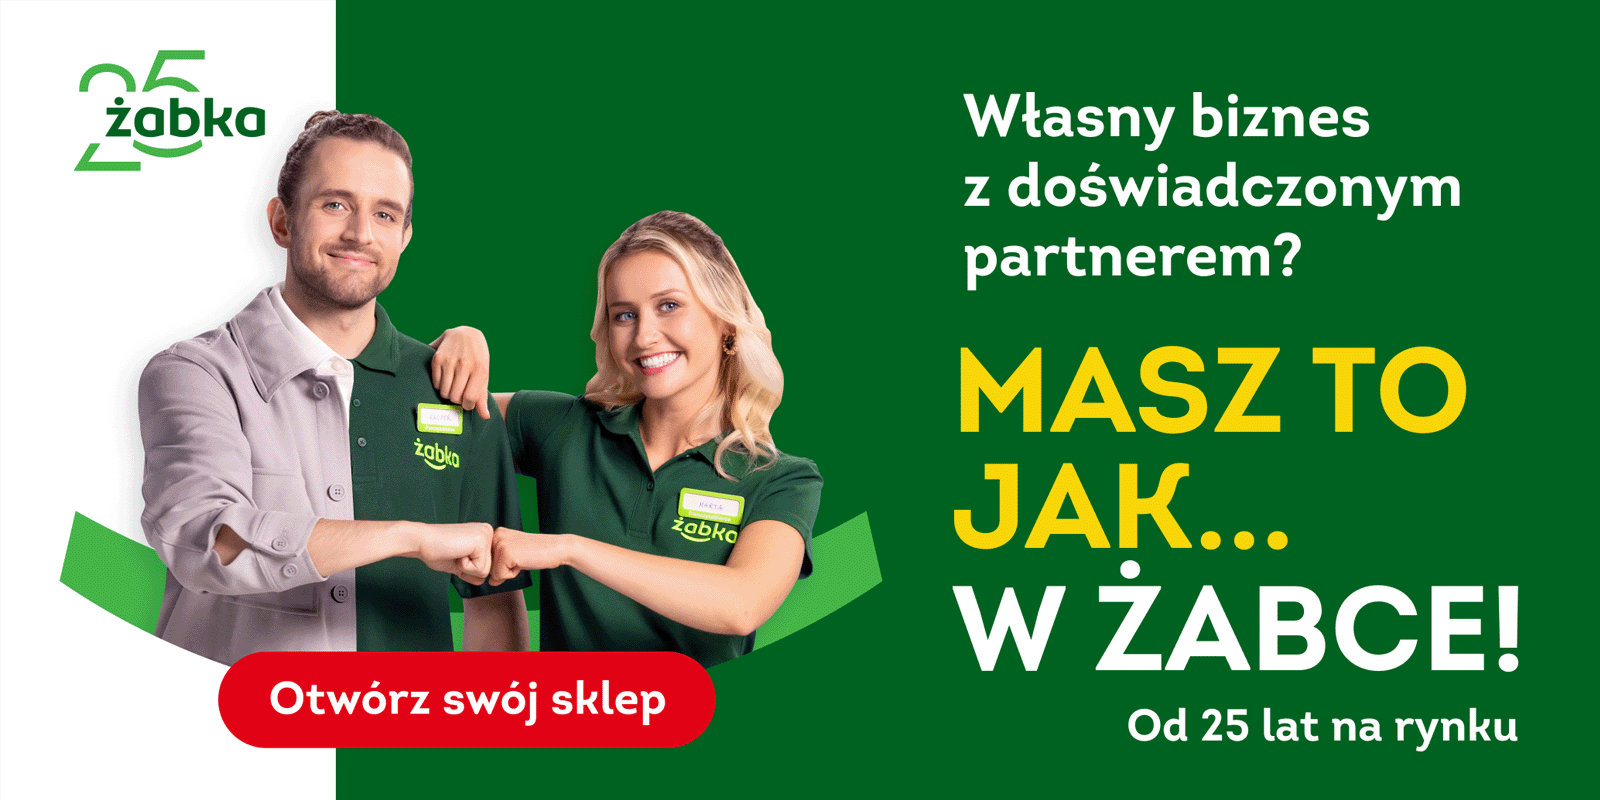 "Masz to jak... w Żabce!" - nowa kampania sieci sklepów Żabka Żabka Polska MEDIARUN COM ZABKA 25 LAT KAMPANIA V1